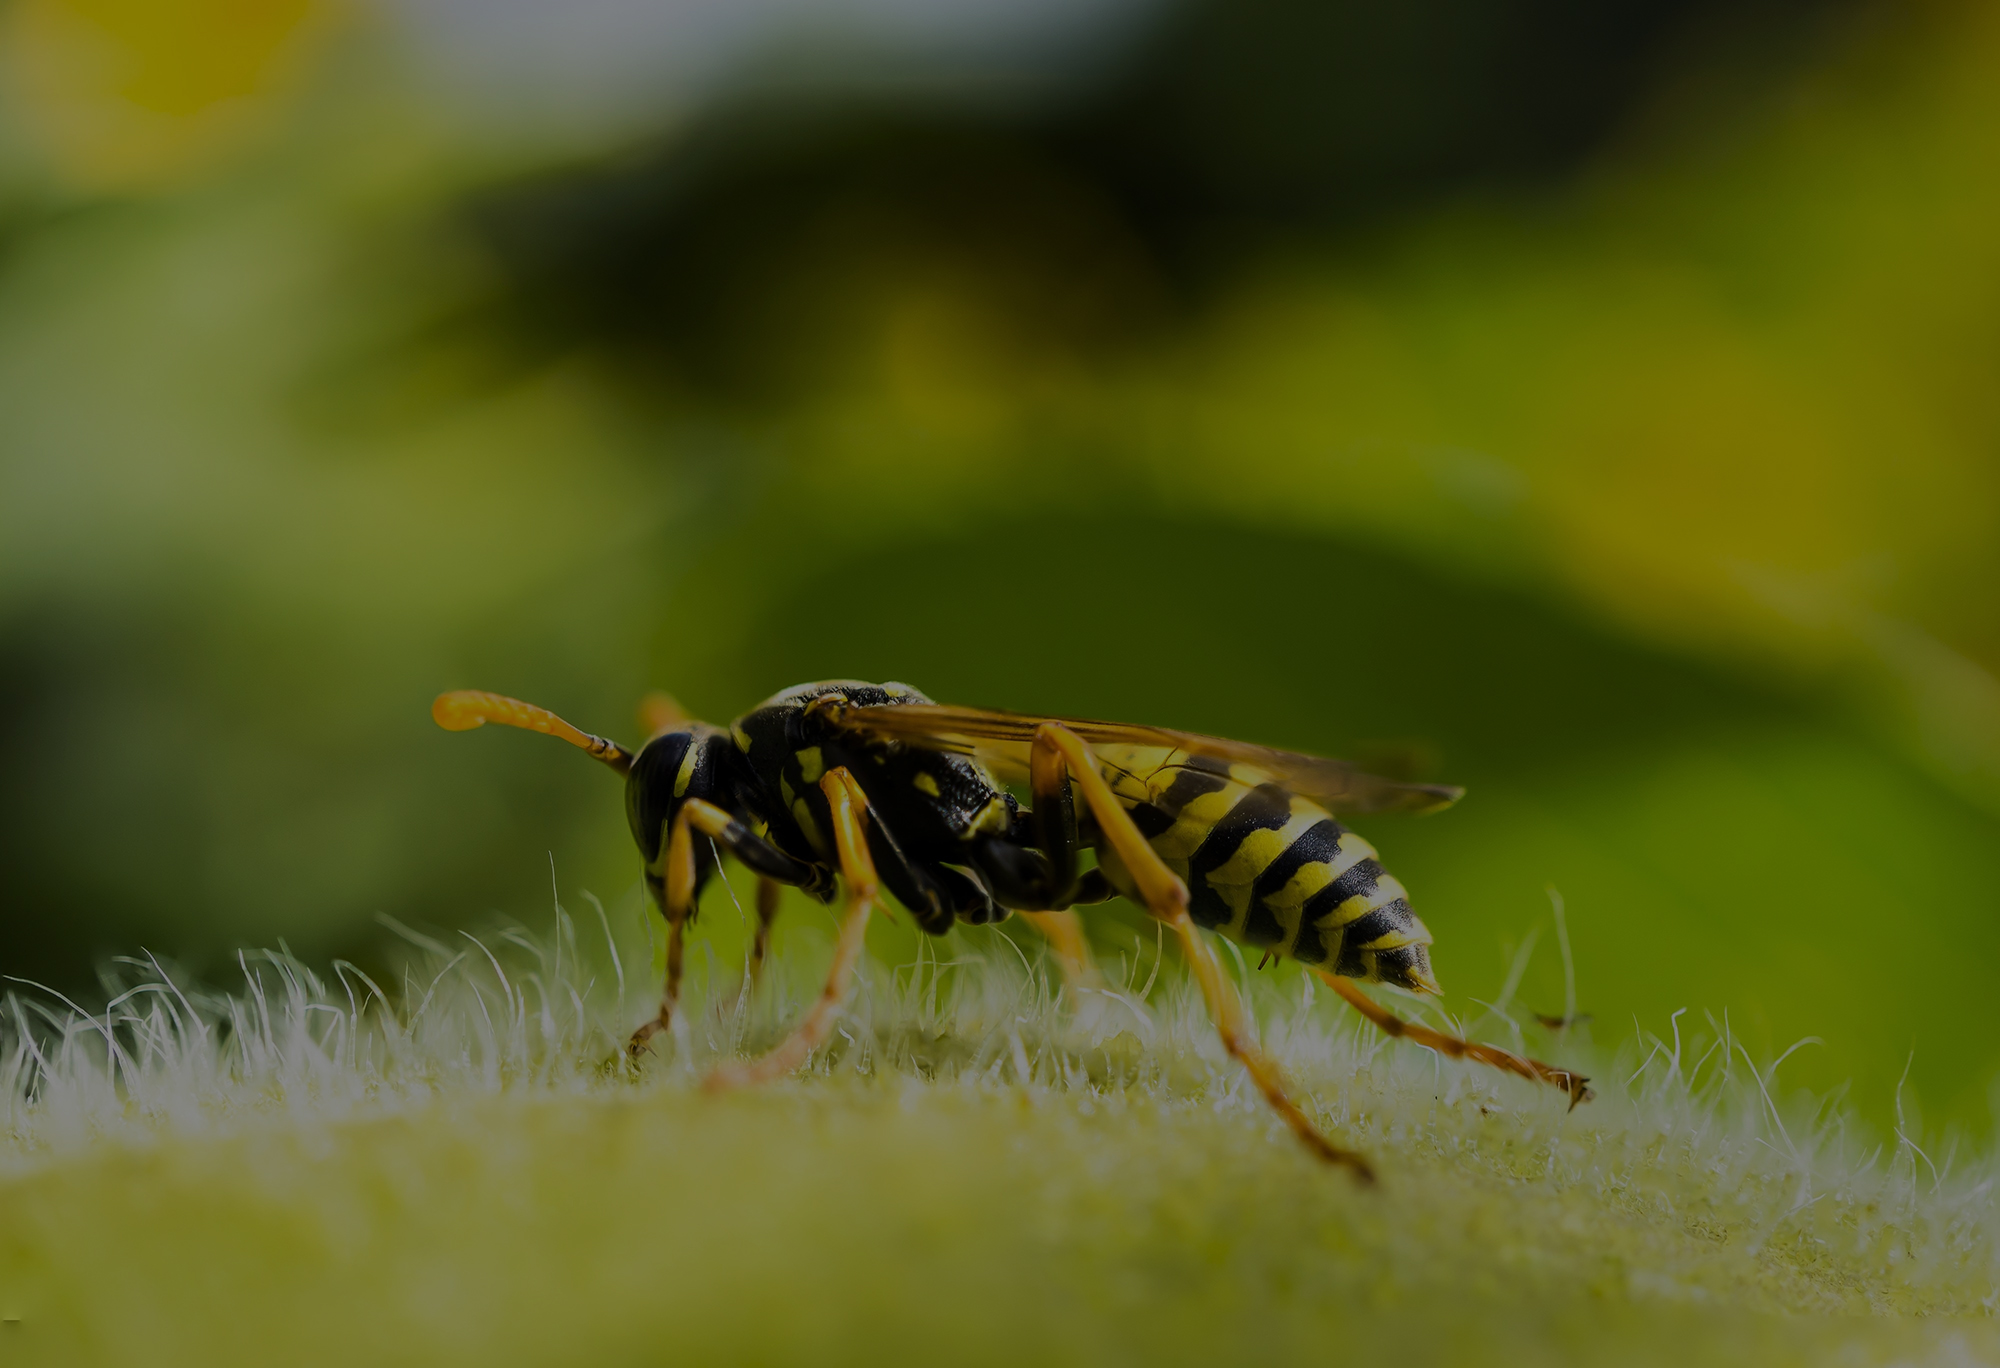 Παραλίγο τραγωδία από τσίμπημα μέλισσας στην γλώσσα 55χρονης από την Κρήτη